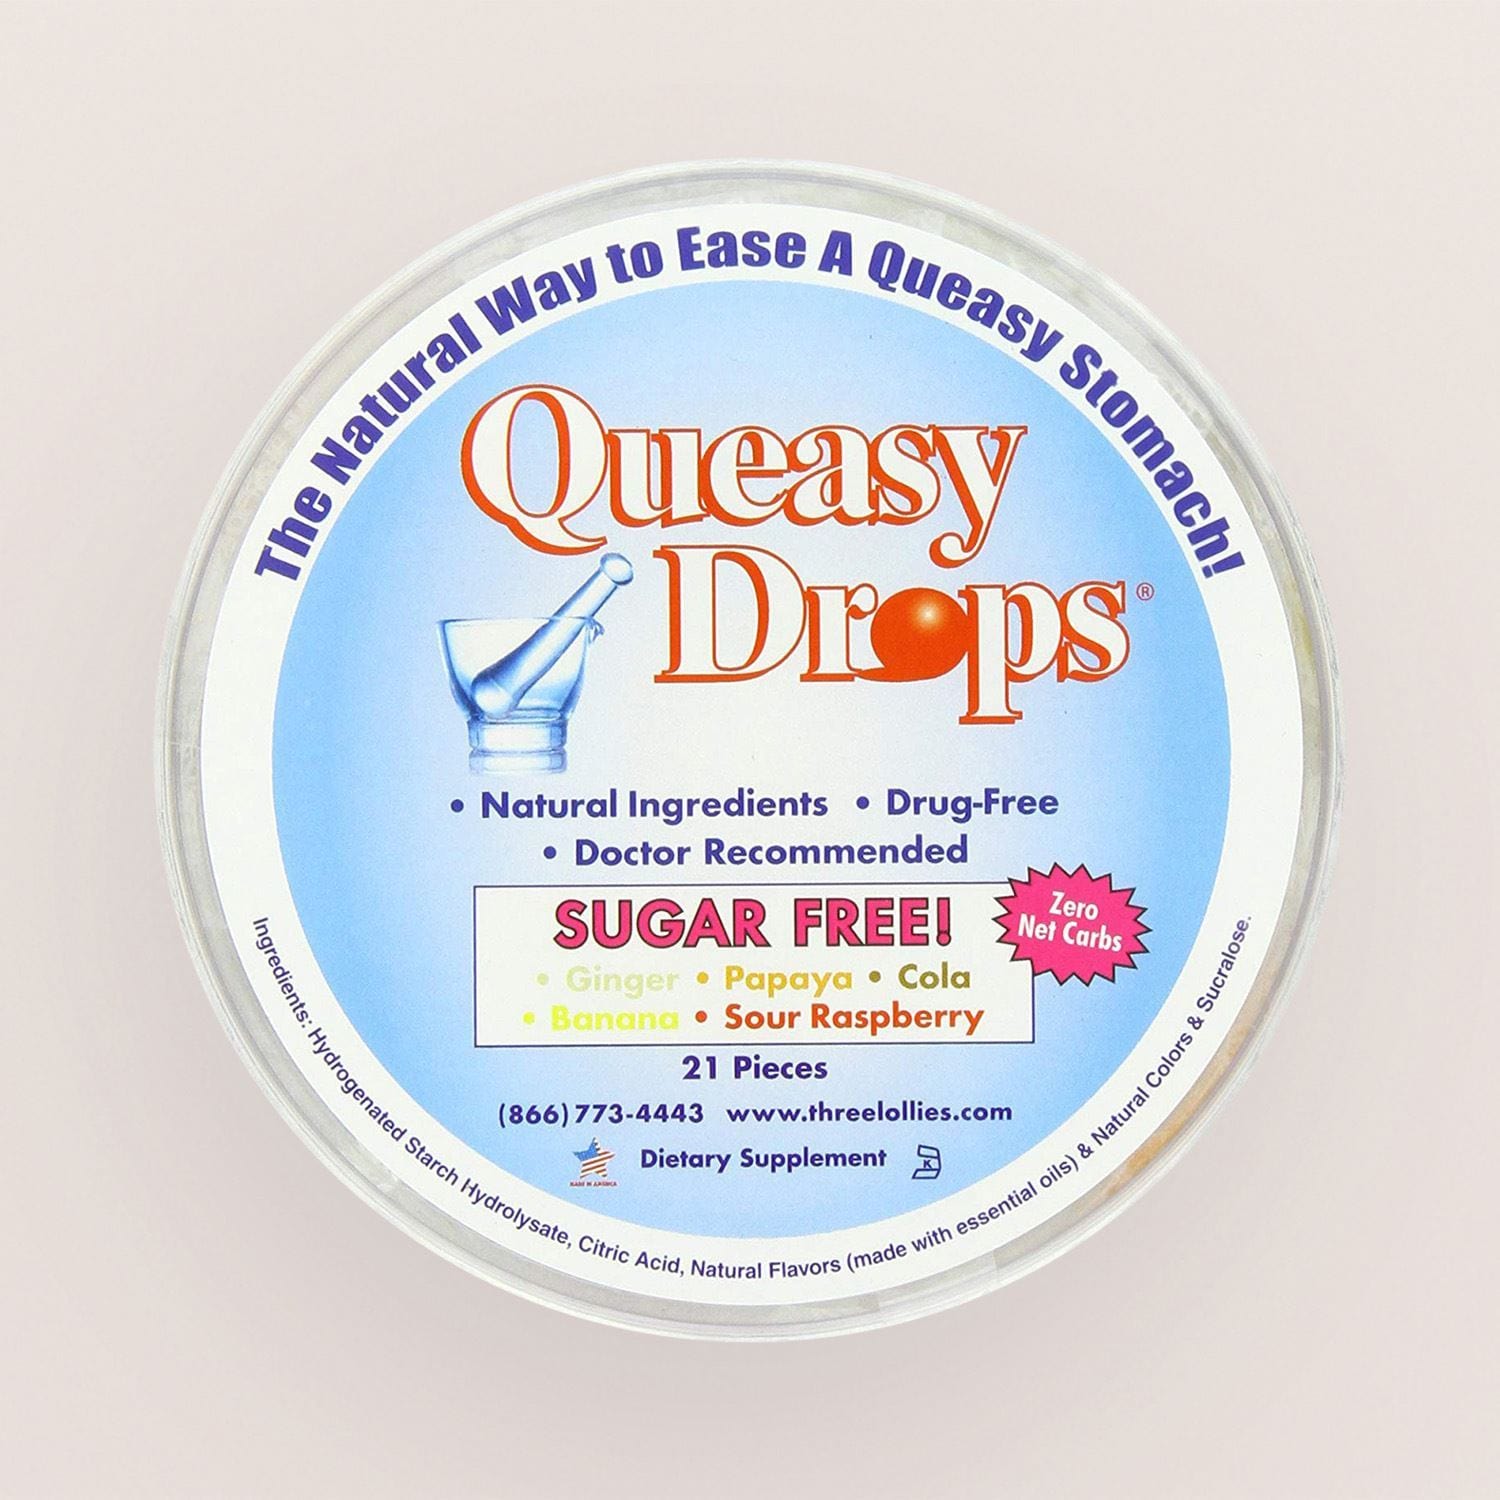 Queasy Drops Sugar Free Nausea Relief Sweets